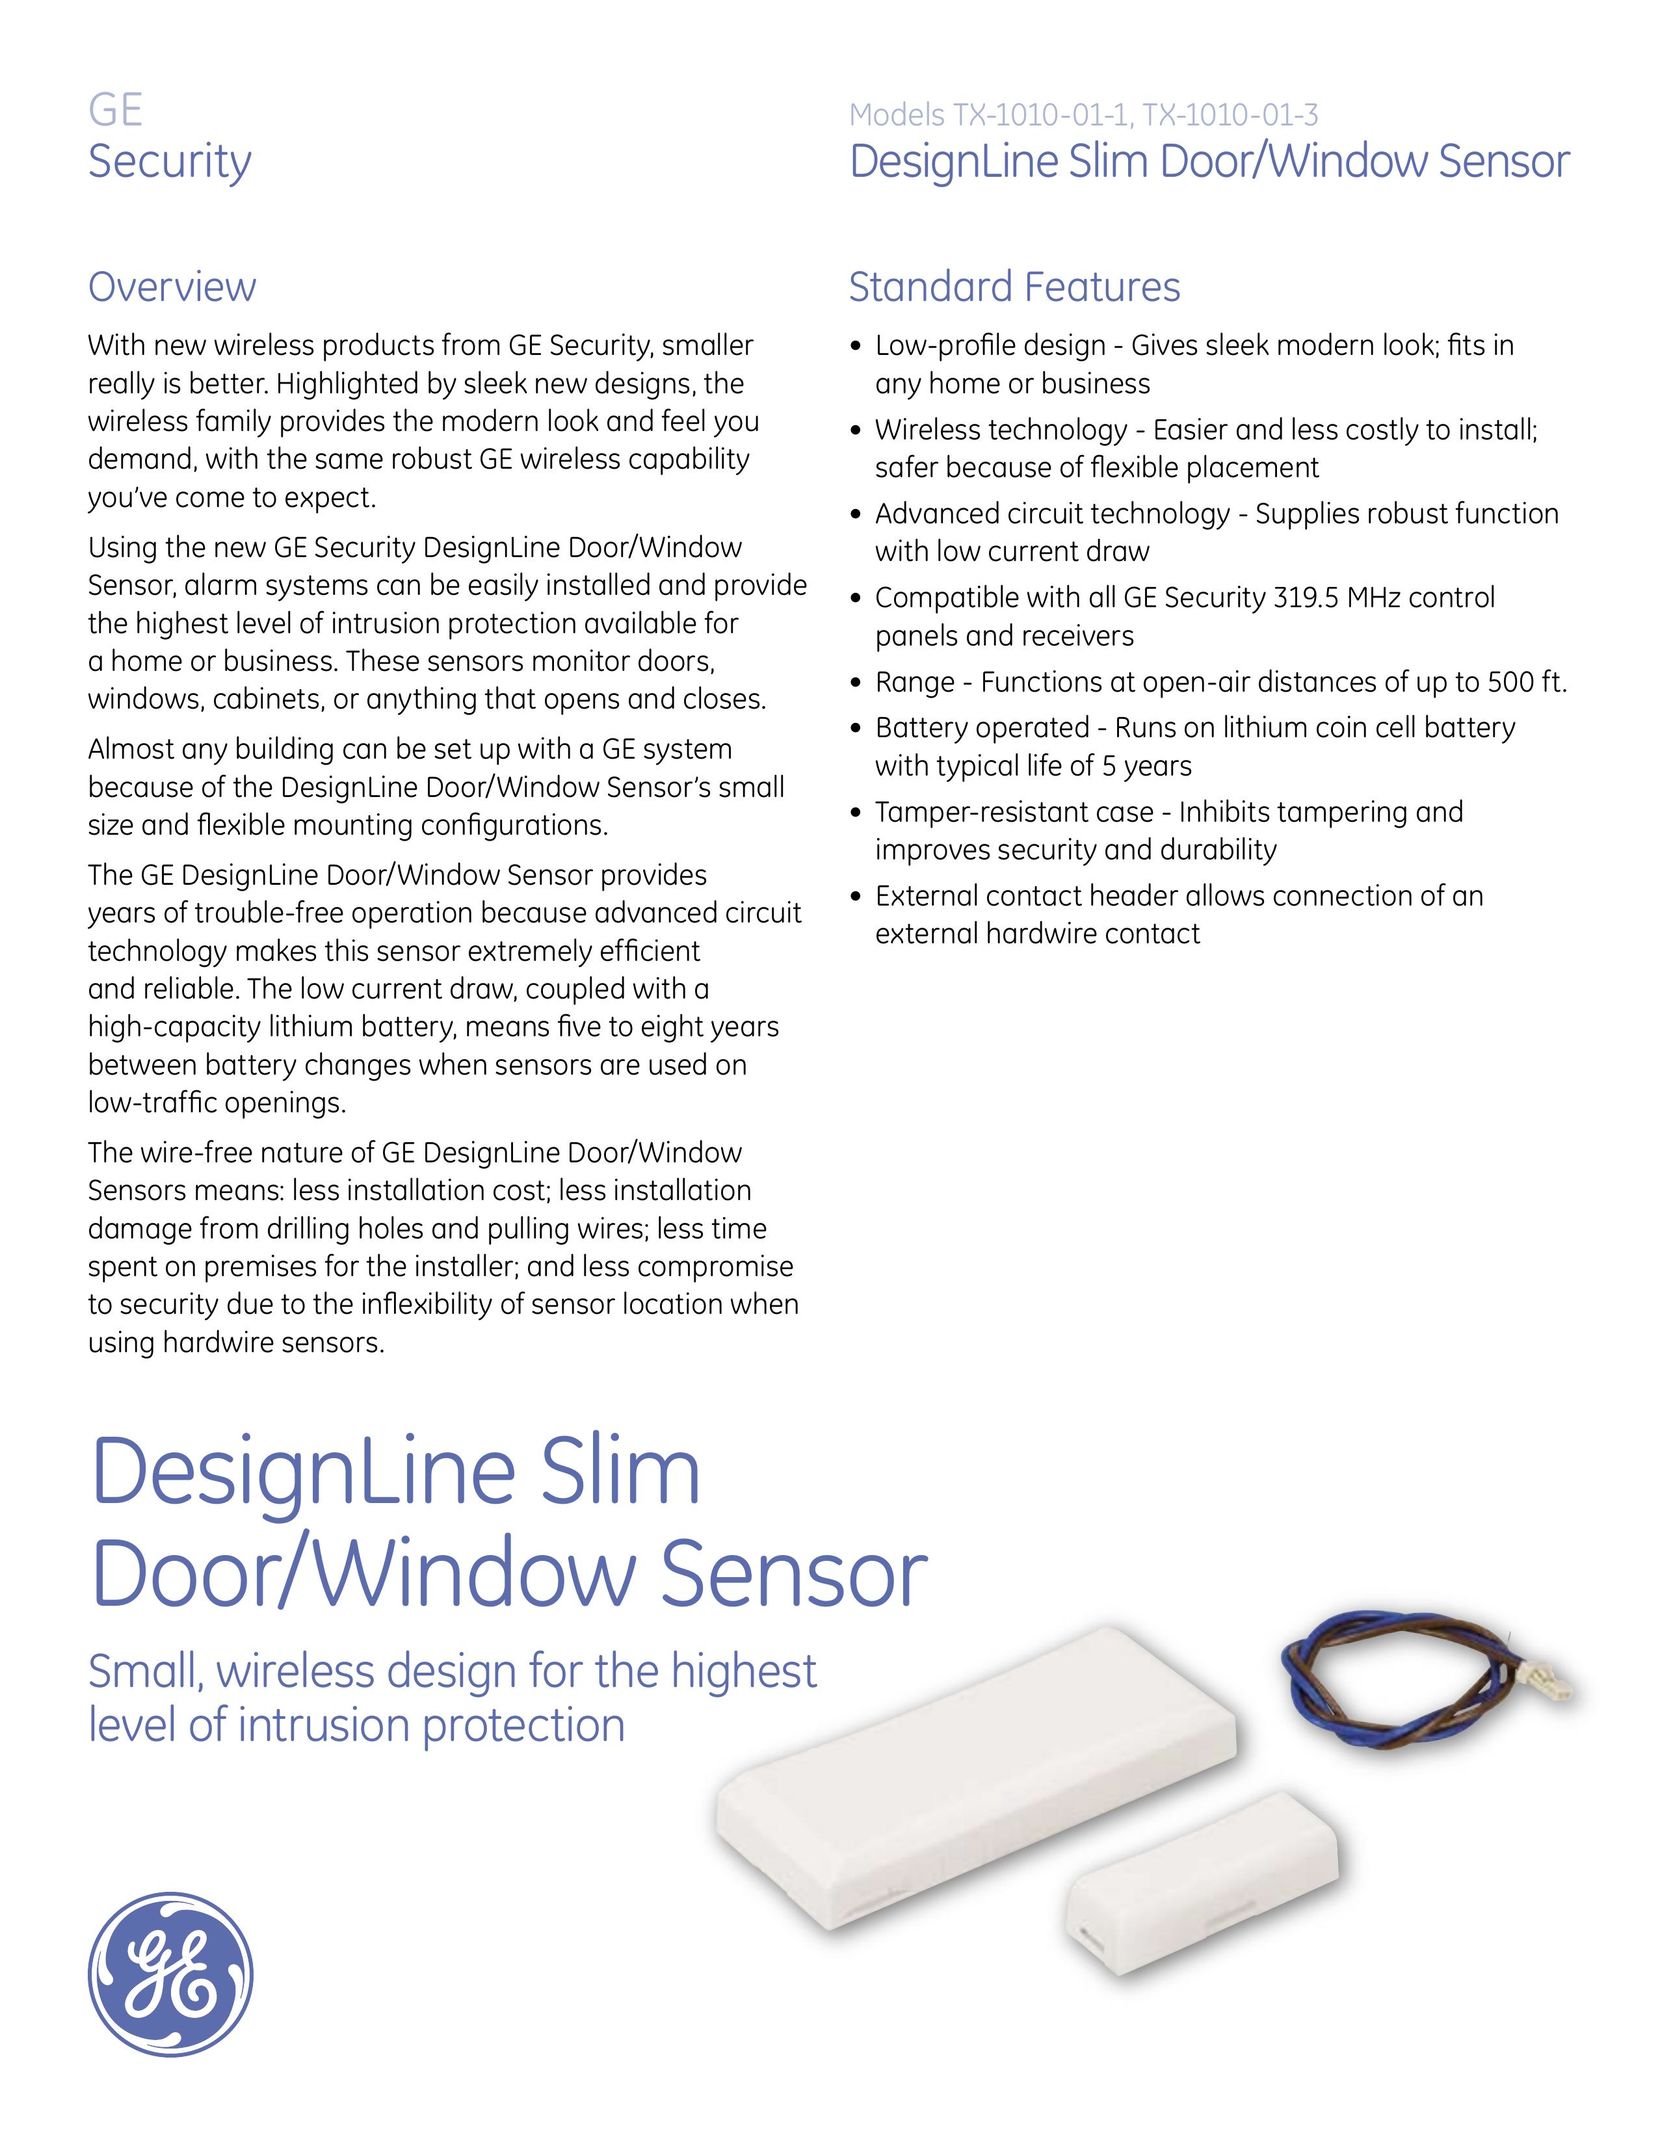 GE TX-1010-01-3 Stud Sensor User Manual